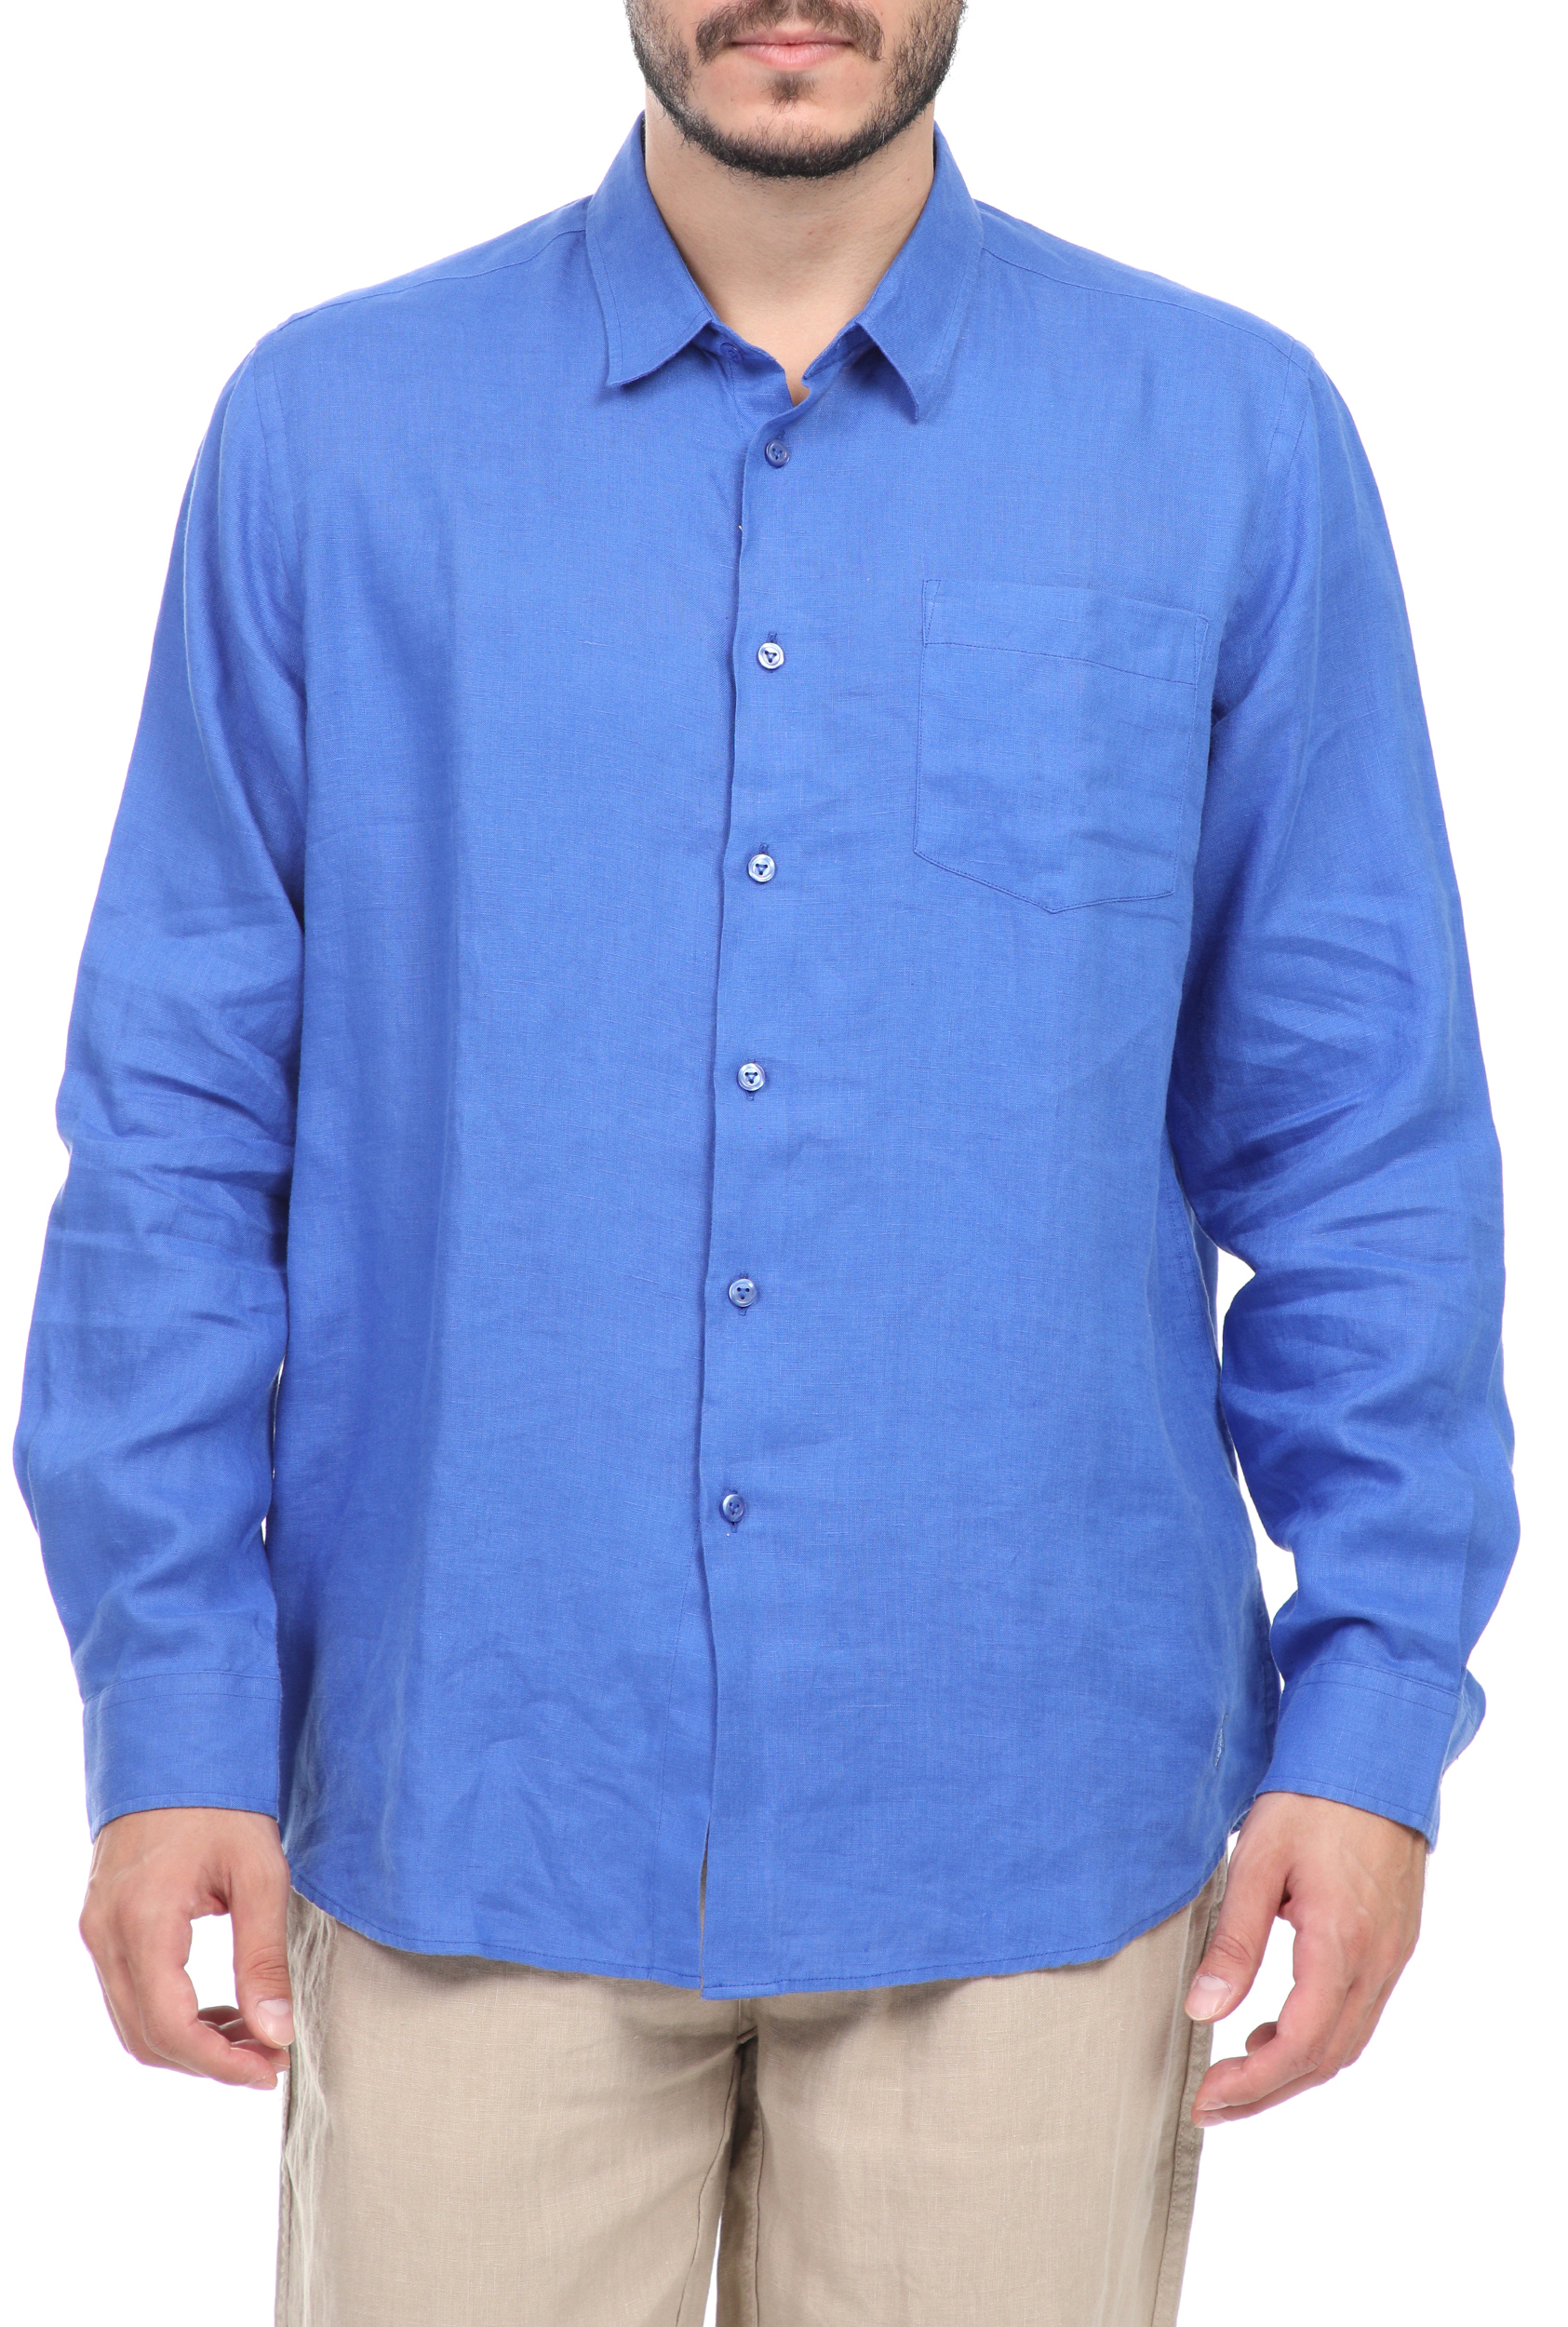 Ανδρικά/Ρούχα/Πουκάμισα/Μακρυμάνικα VILEBREQUIN - Ανδρικό λινό πουκάμισο VILEBREQUIN CAROUBIS μπλε